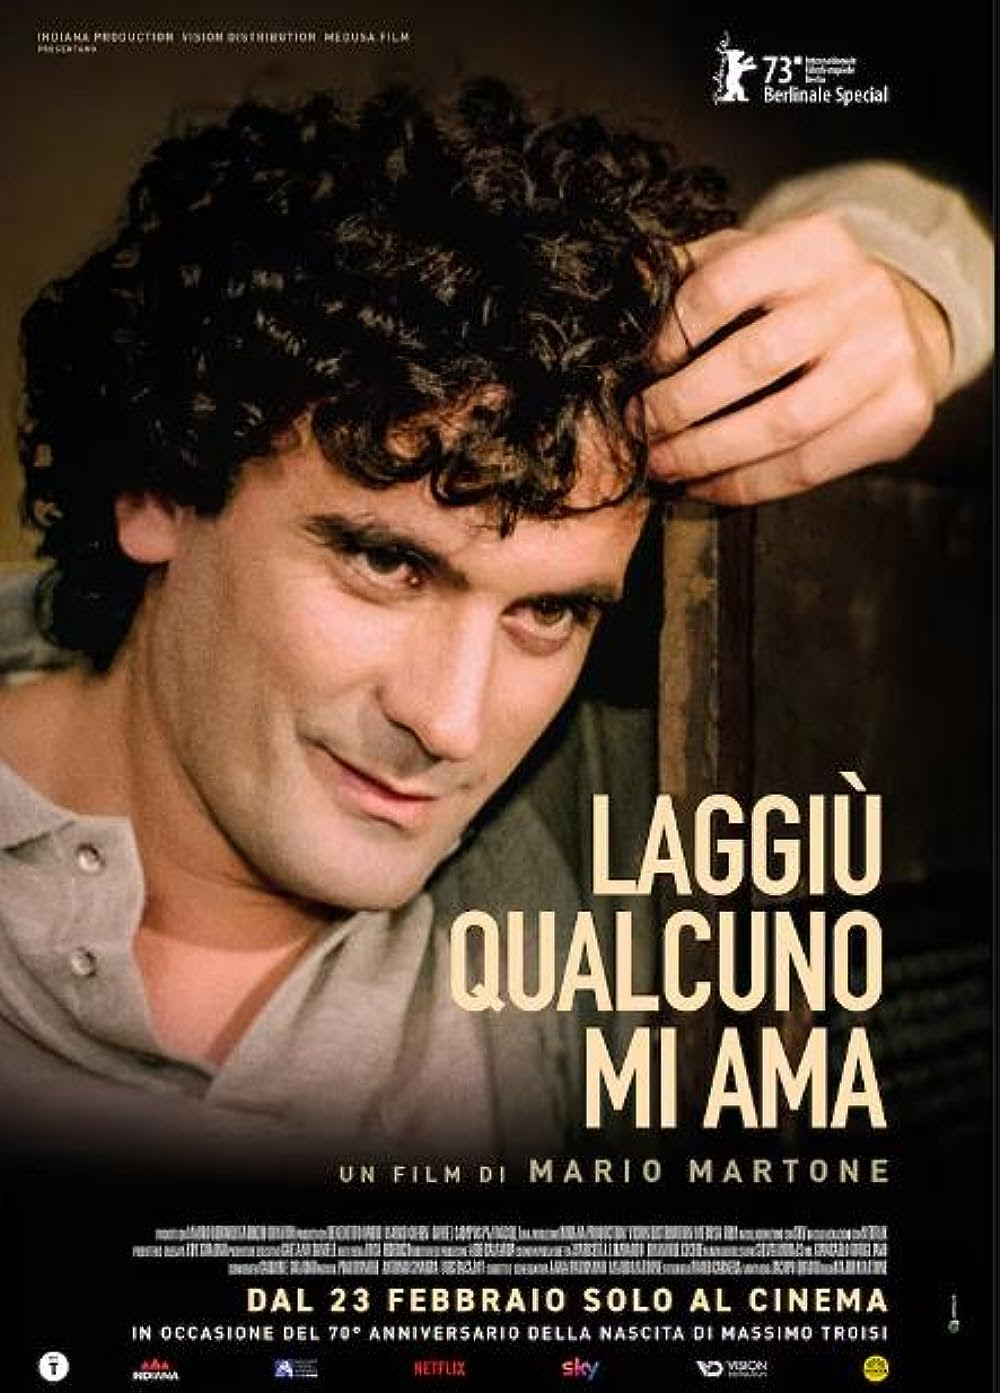 La locandina del film su Massimo Troisi Laggiù qualcuno mi ama, diretto da Marco Martone.